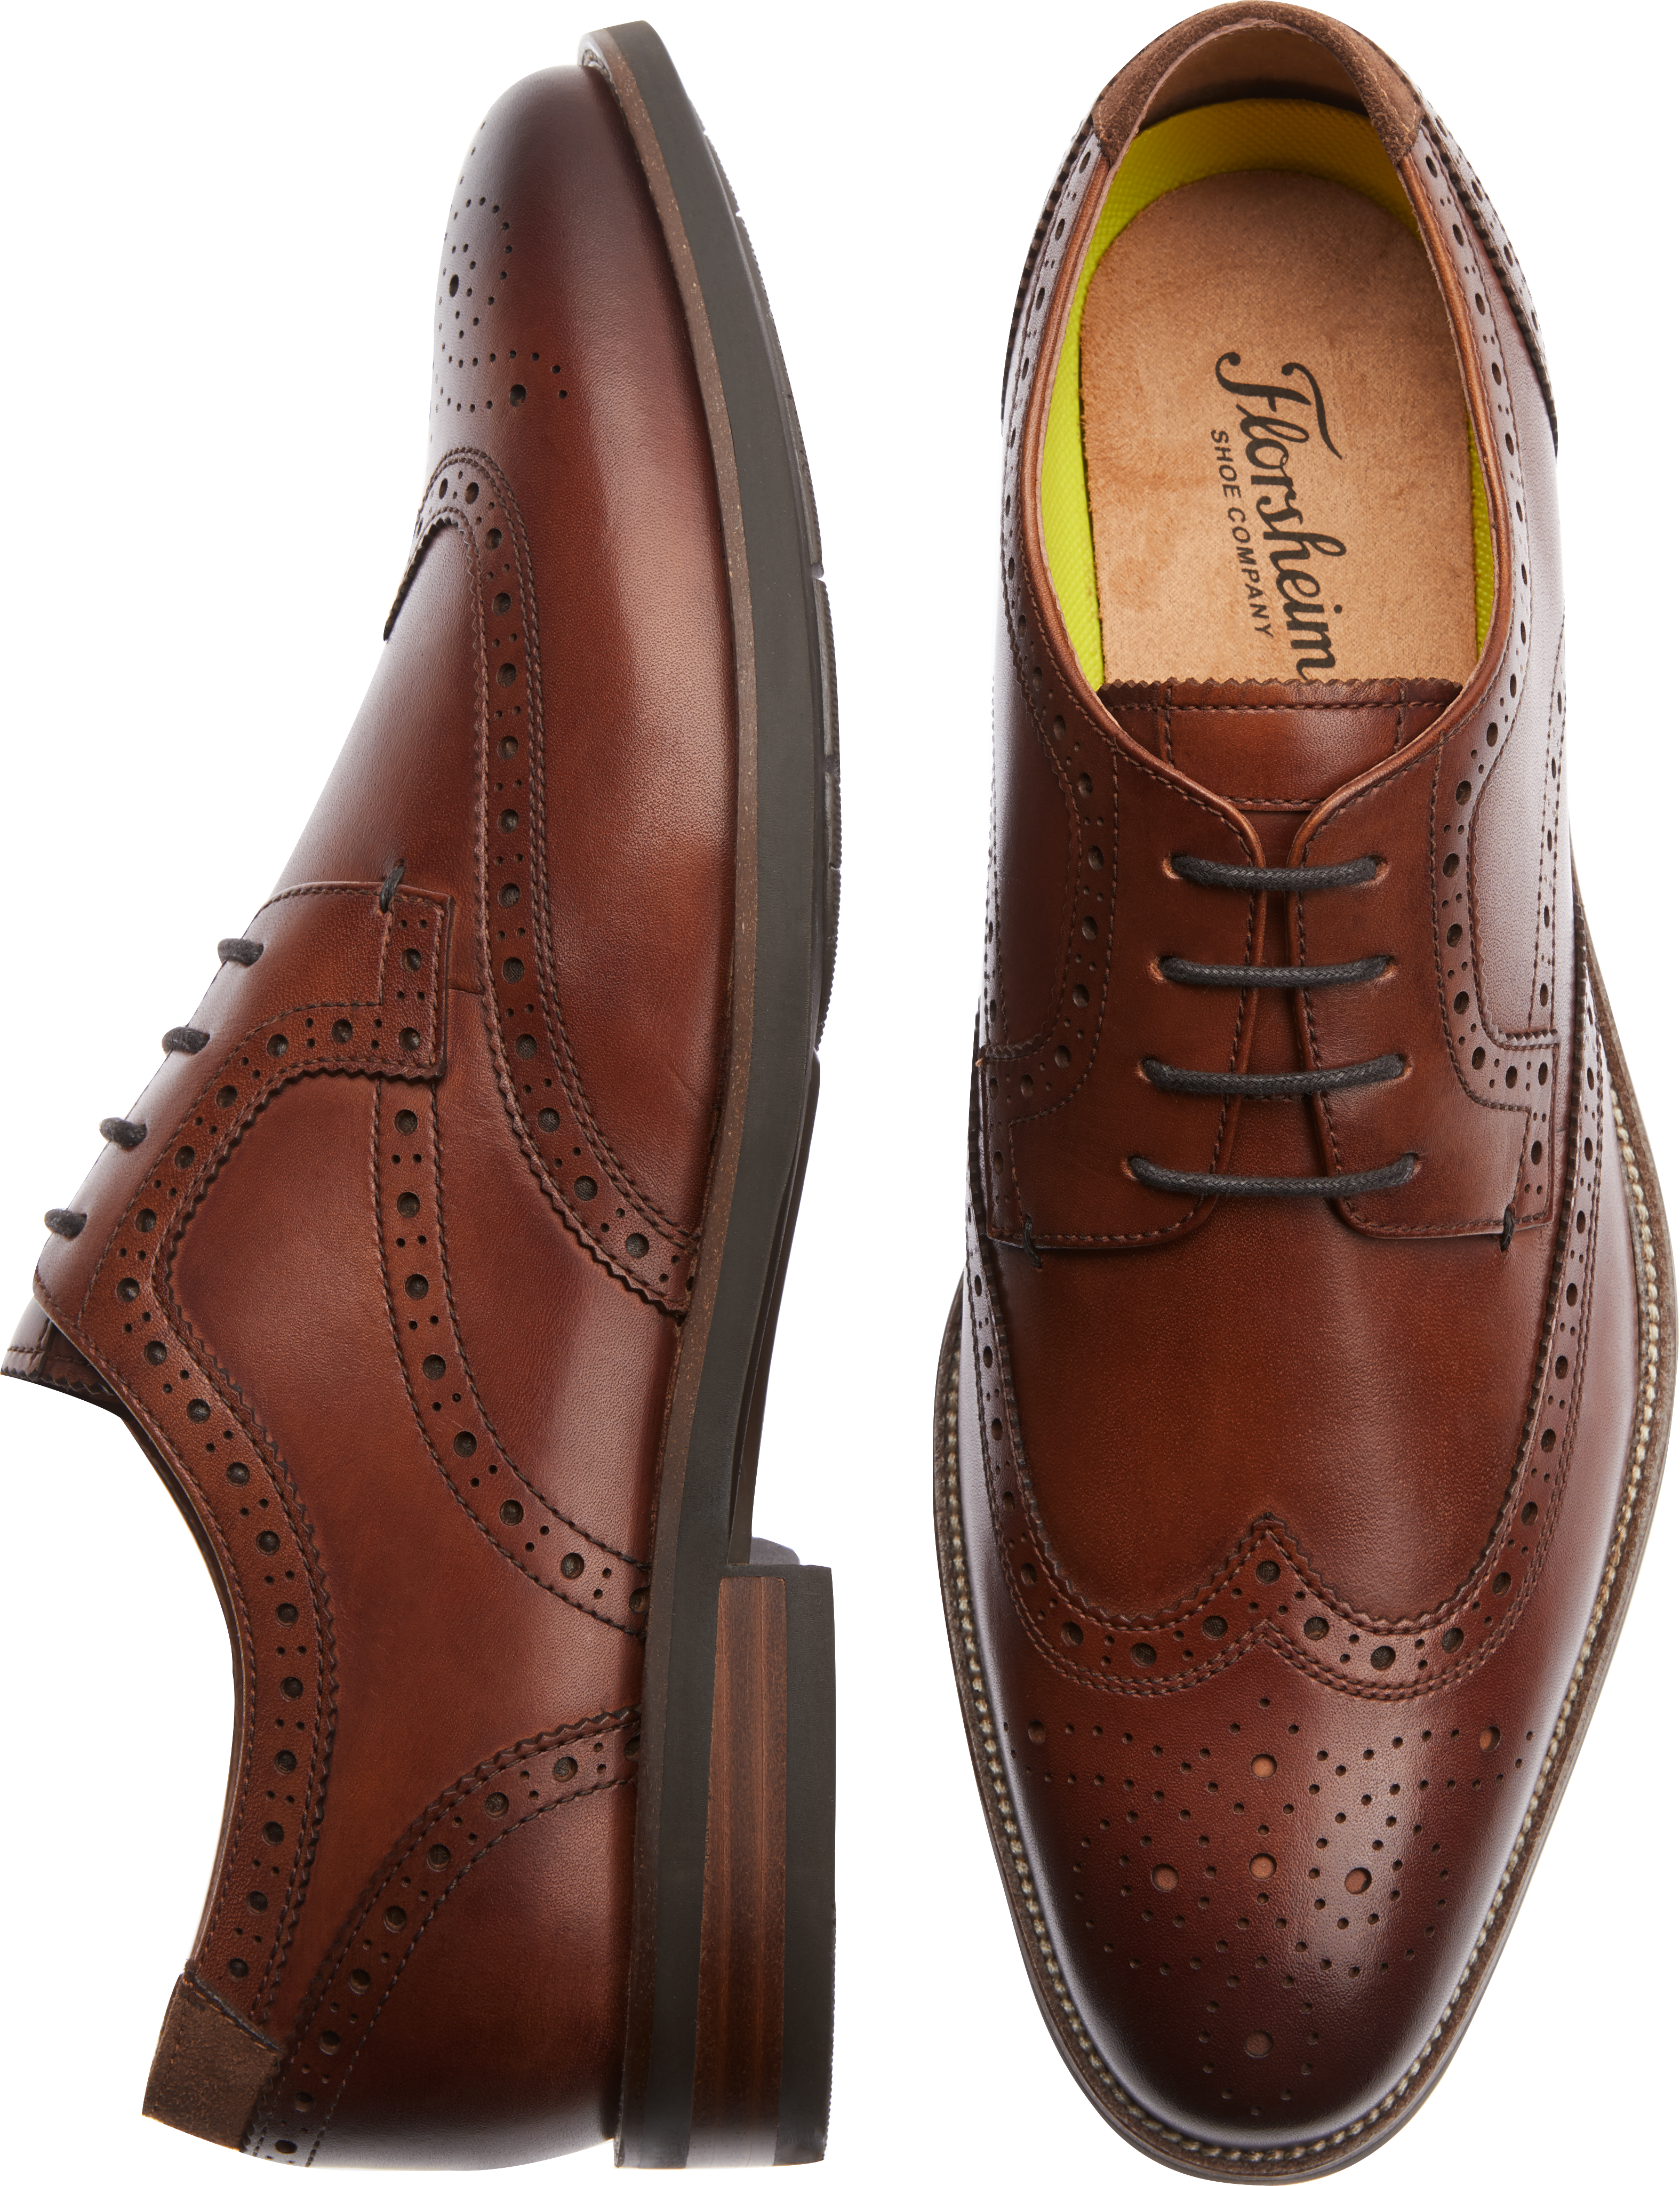 Florsheim Upscale Cognac Wingtip Lace Ups - Men's Shoes | Men's Wearhouse